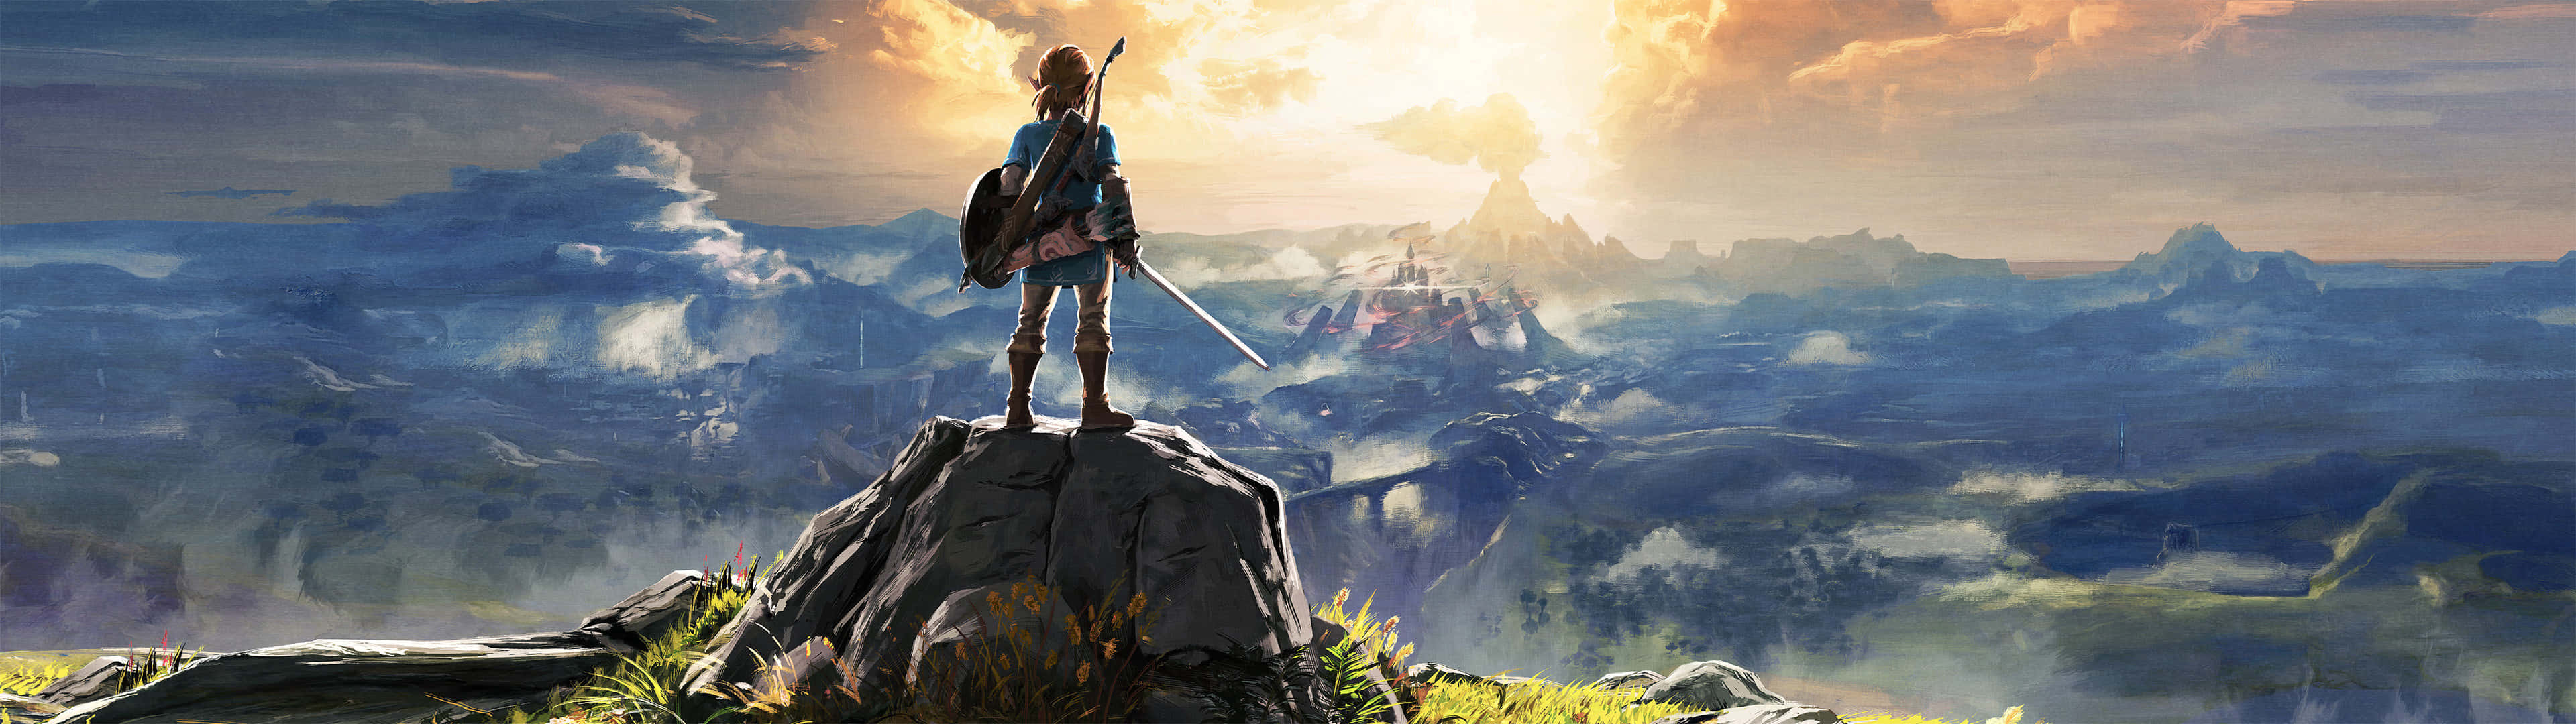 Legend Of Zelda 3840 X 1080 Gaming Wallpaper